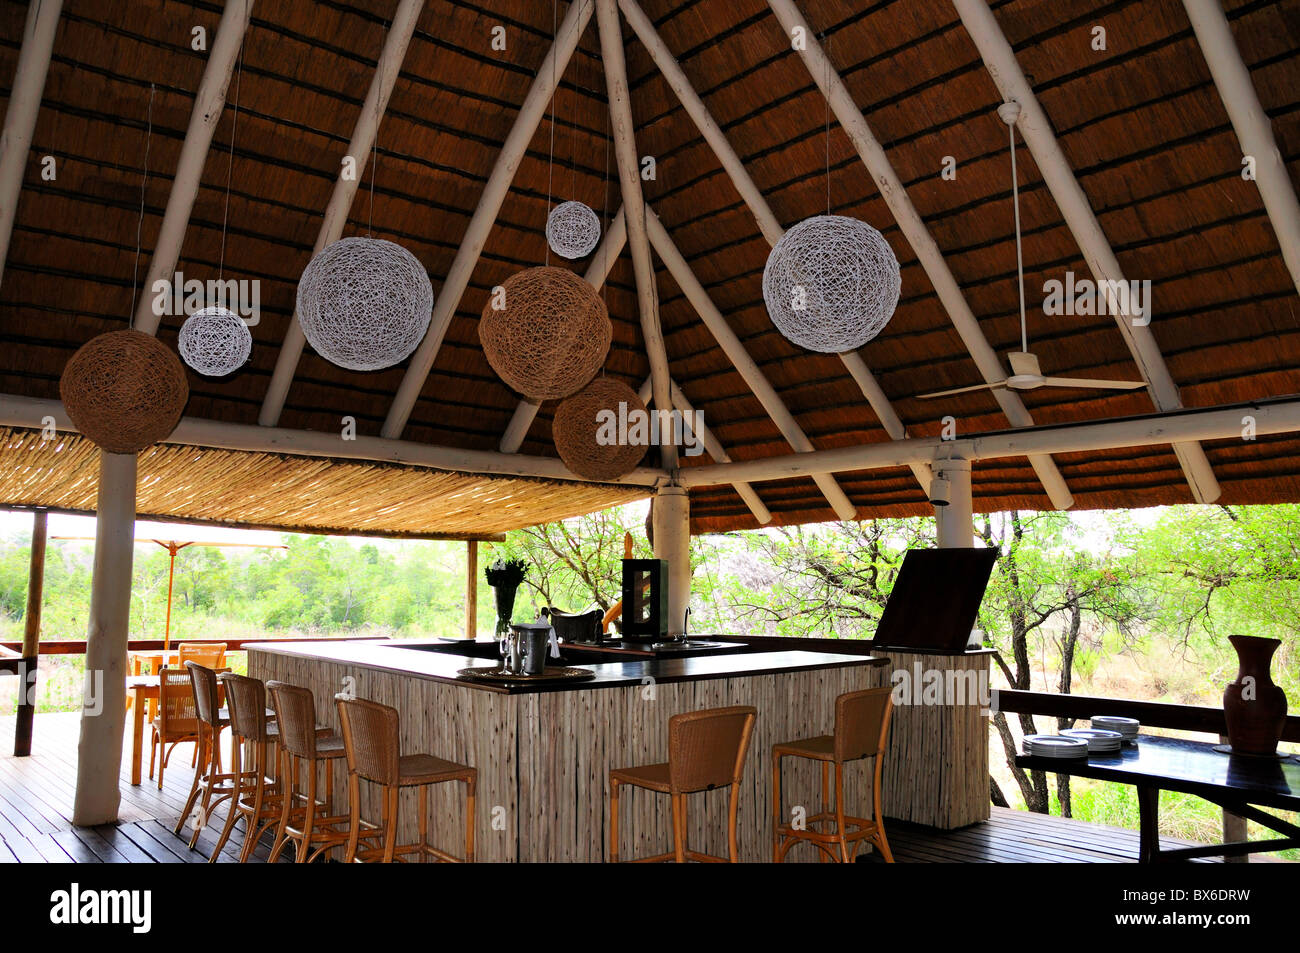 Bar auf einer Open-Air-Terrasse. Londolozi Game Reserve, Südafrika. Stockfoto